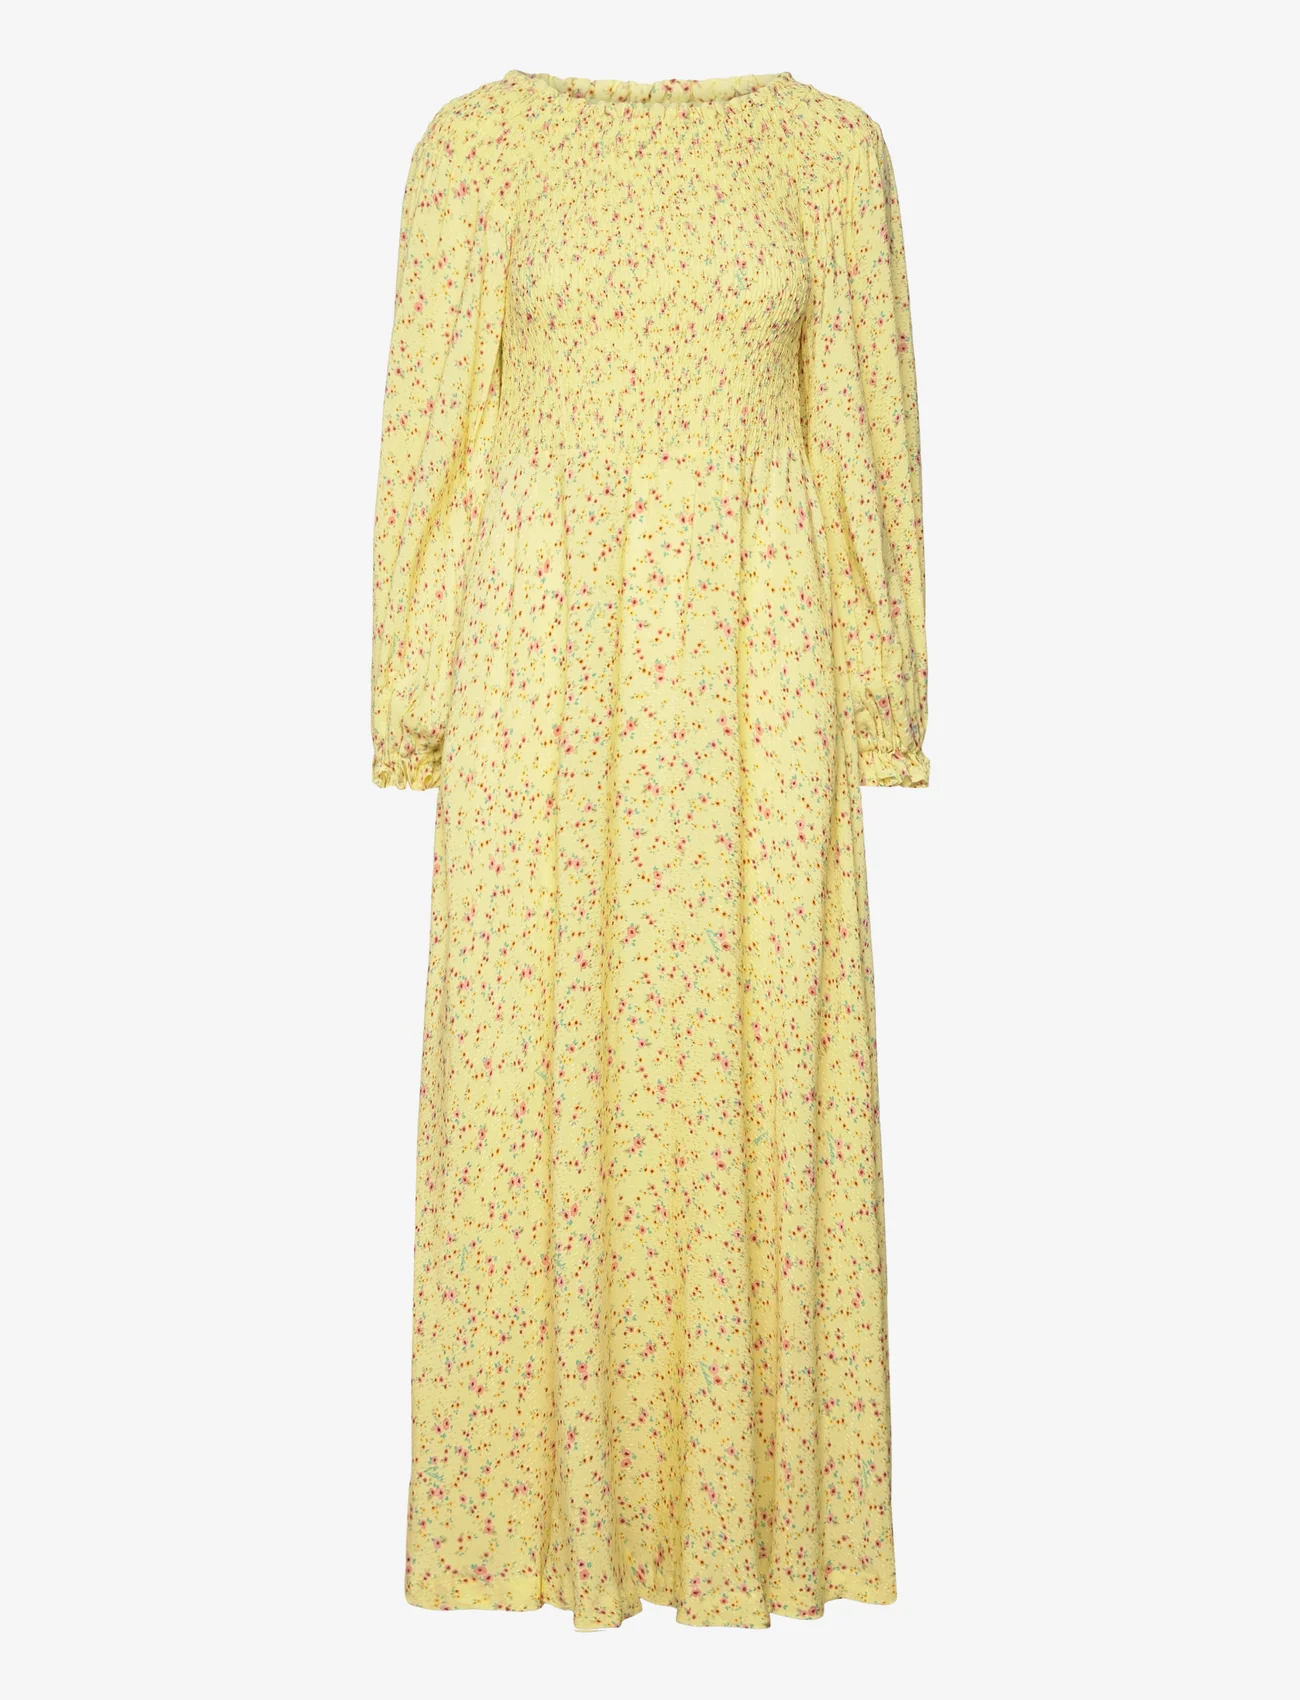 ROTATE Birger Christensen - Light Jacquard Maxi Dress - sommerkleider - yellow pear comb. - 0